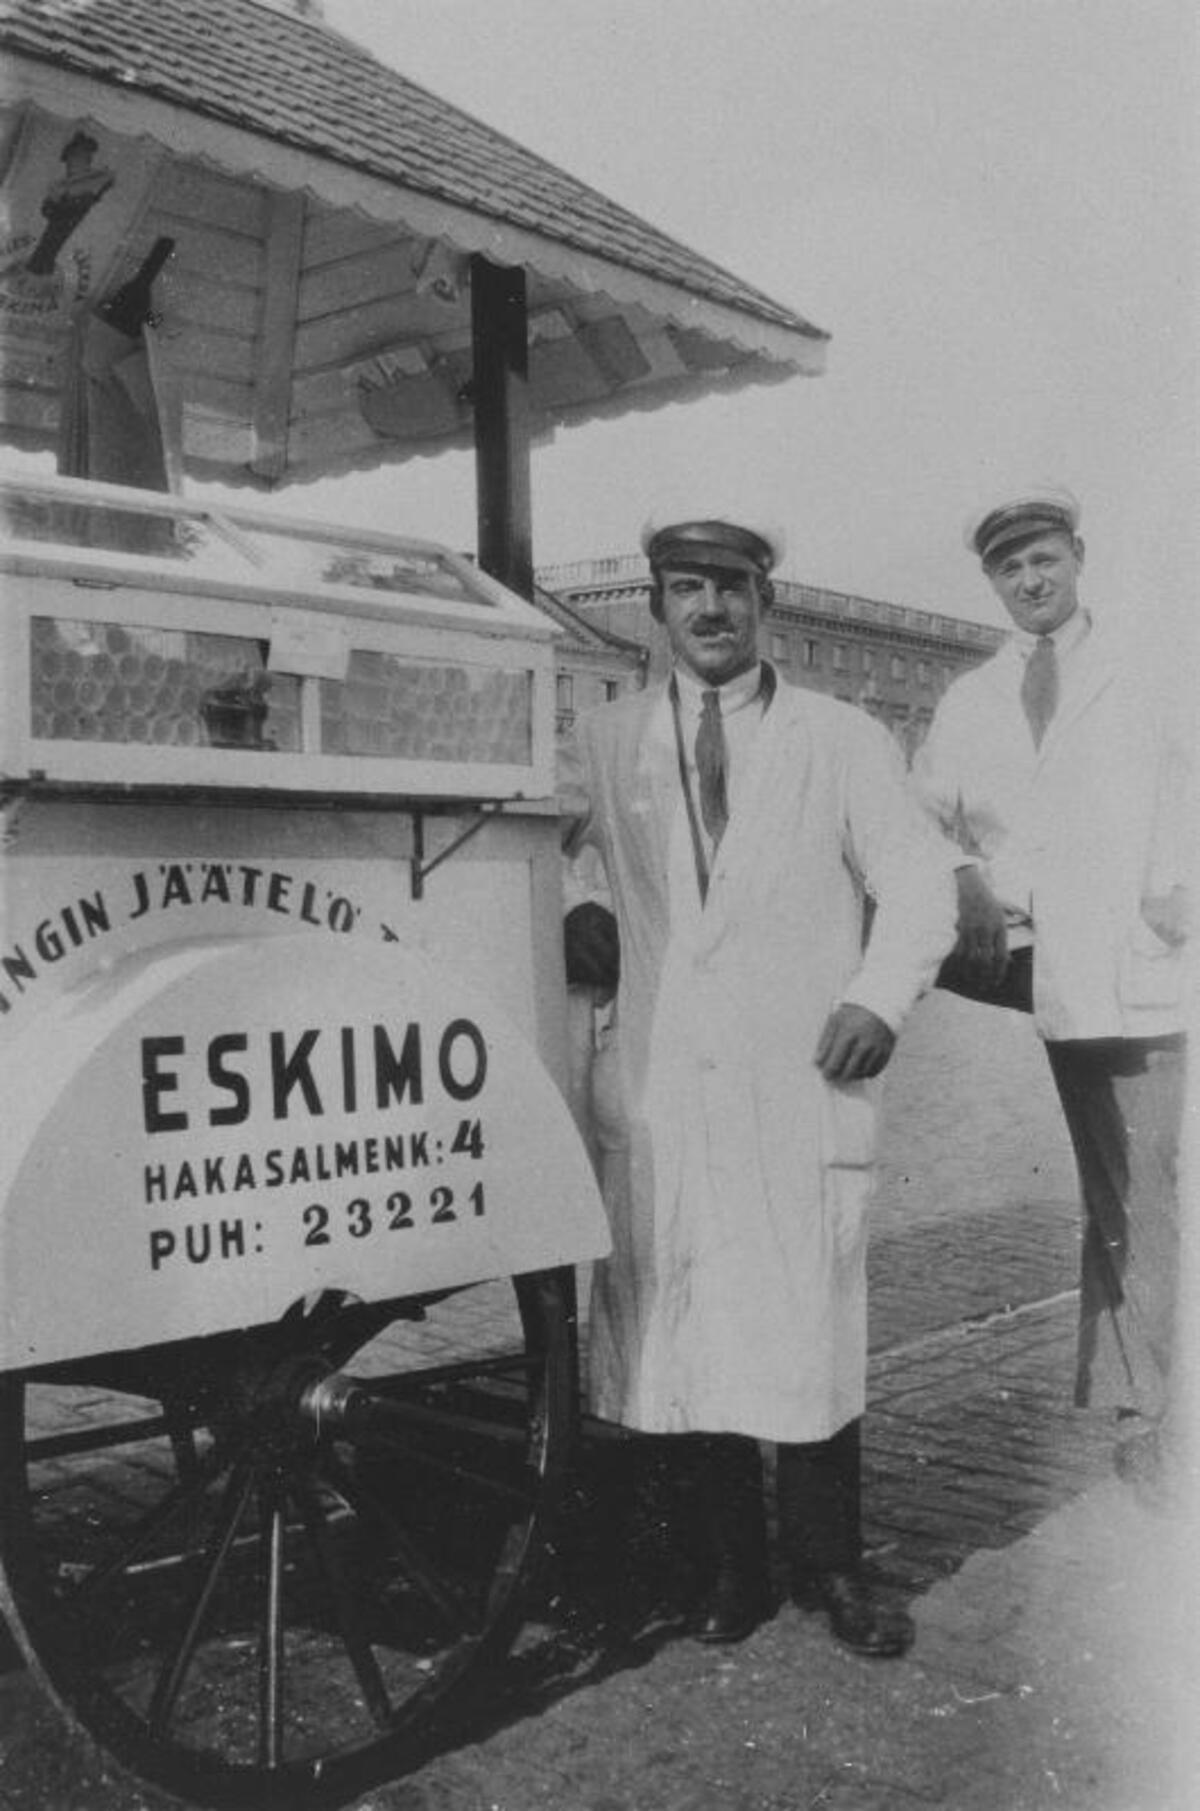 Alkuun jäätelöä myytiin työnnettävistä myyntikärryistä. Kuvassa on Helsingin Jäätelötehtaan jäätelönmyyjiä kärryineen. Kuvaaja: KAMU Espoon kaupunginmuseo / Tuntematon kuvaaja